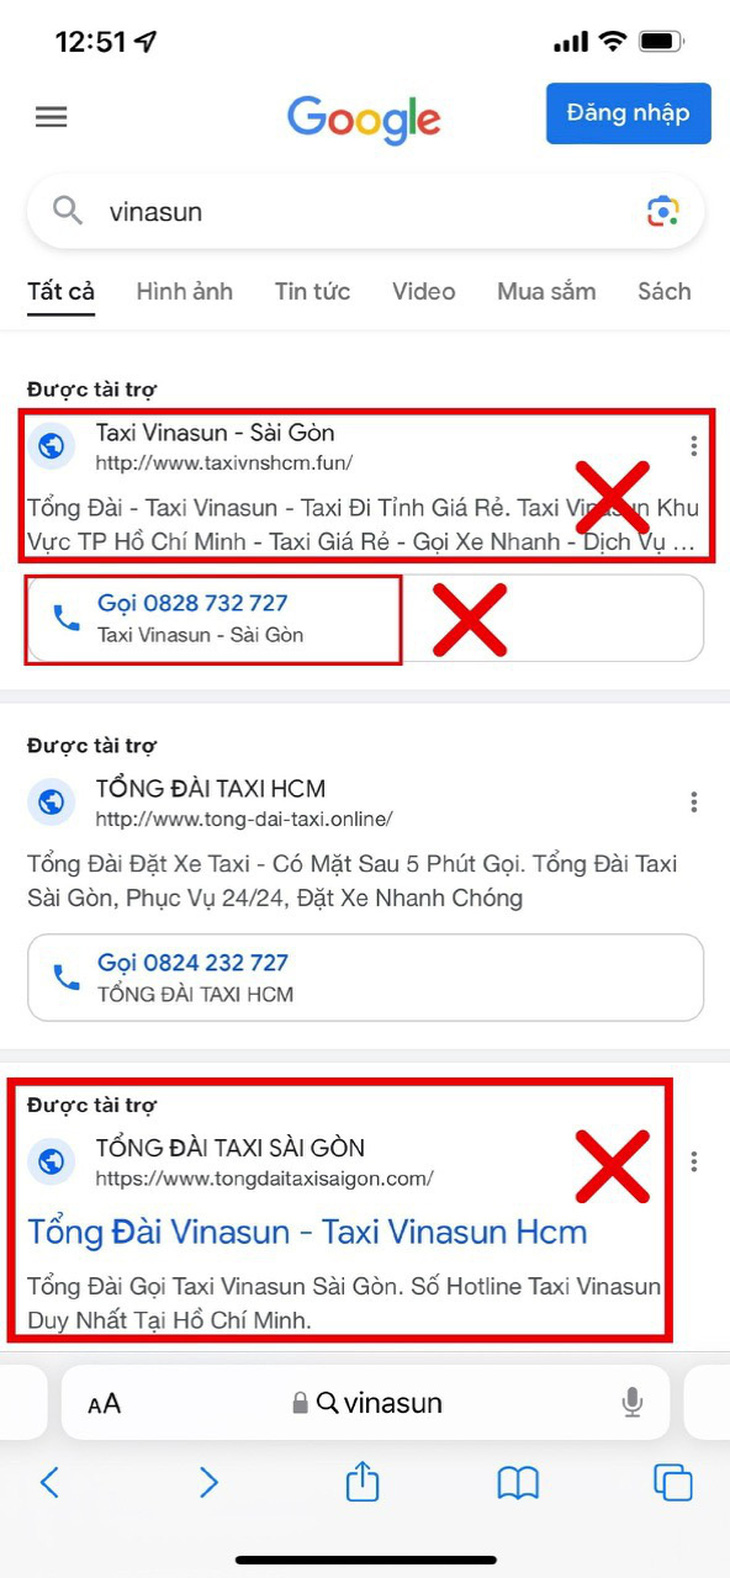 Taxi Vinasun bị giả mạo, cảnh báo khách hàng tránh nhầm lẫn với số điện thoại hiển thị trên Google - Ảnh: Vinasun